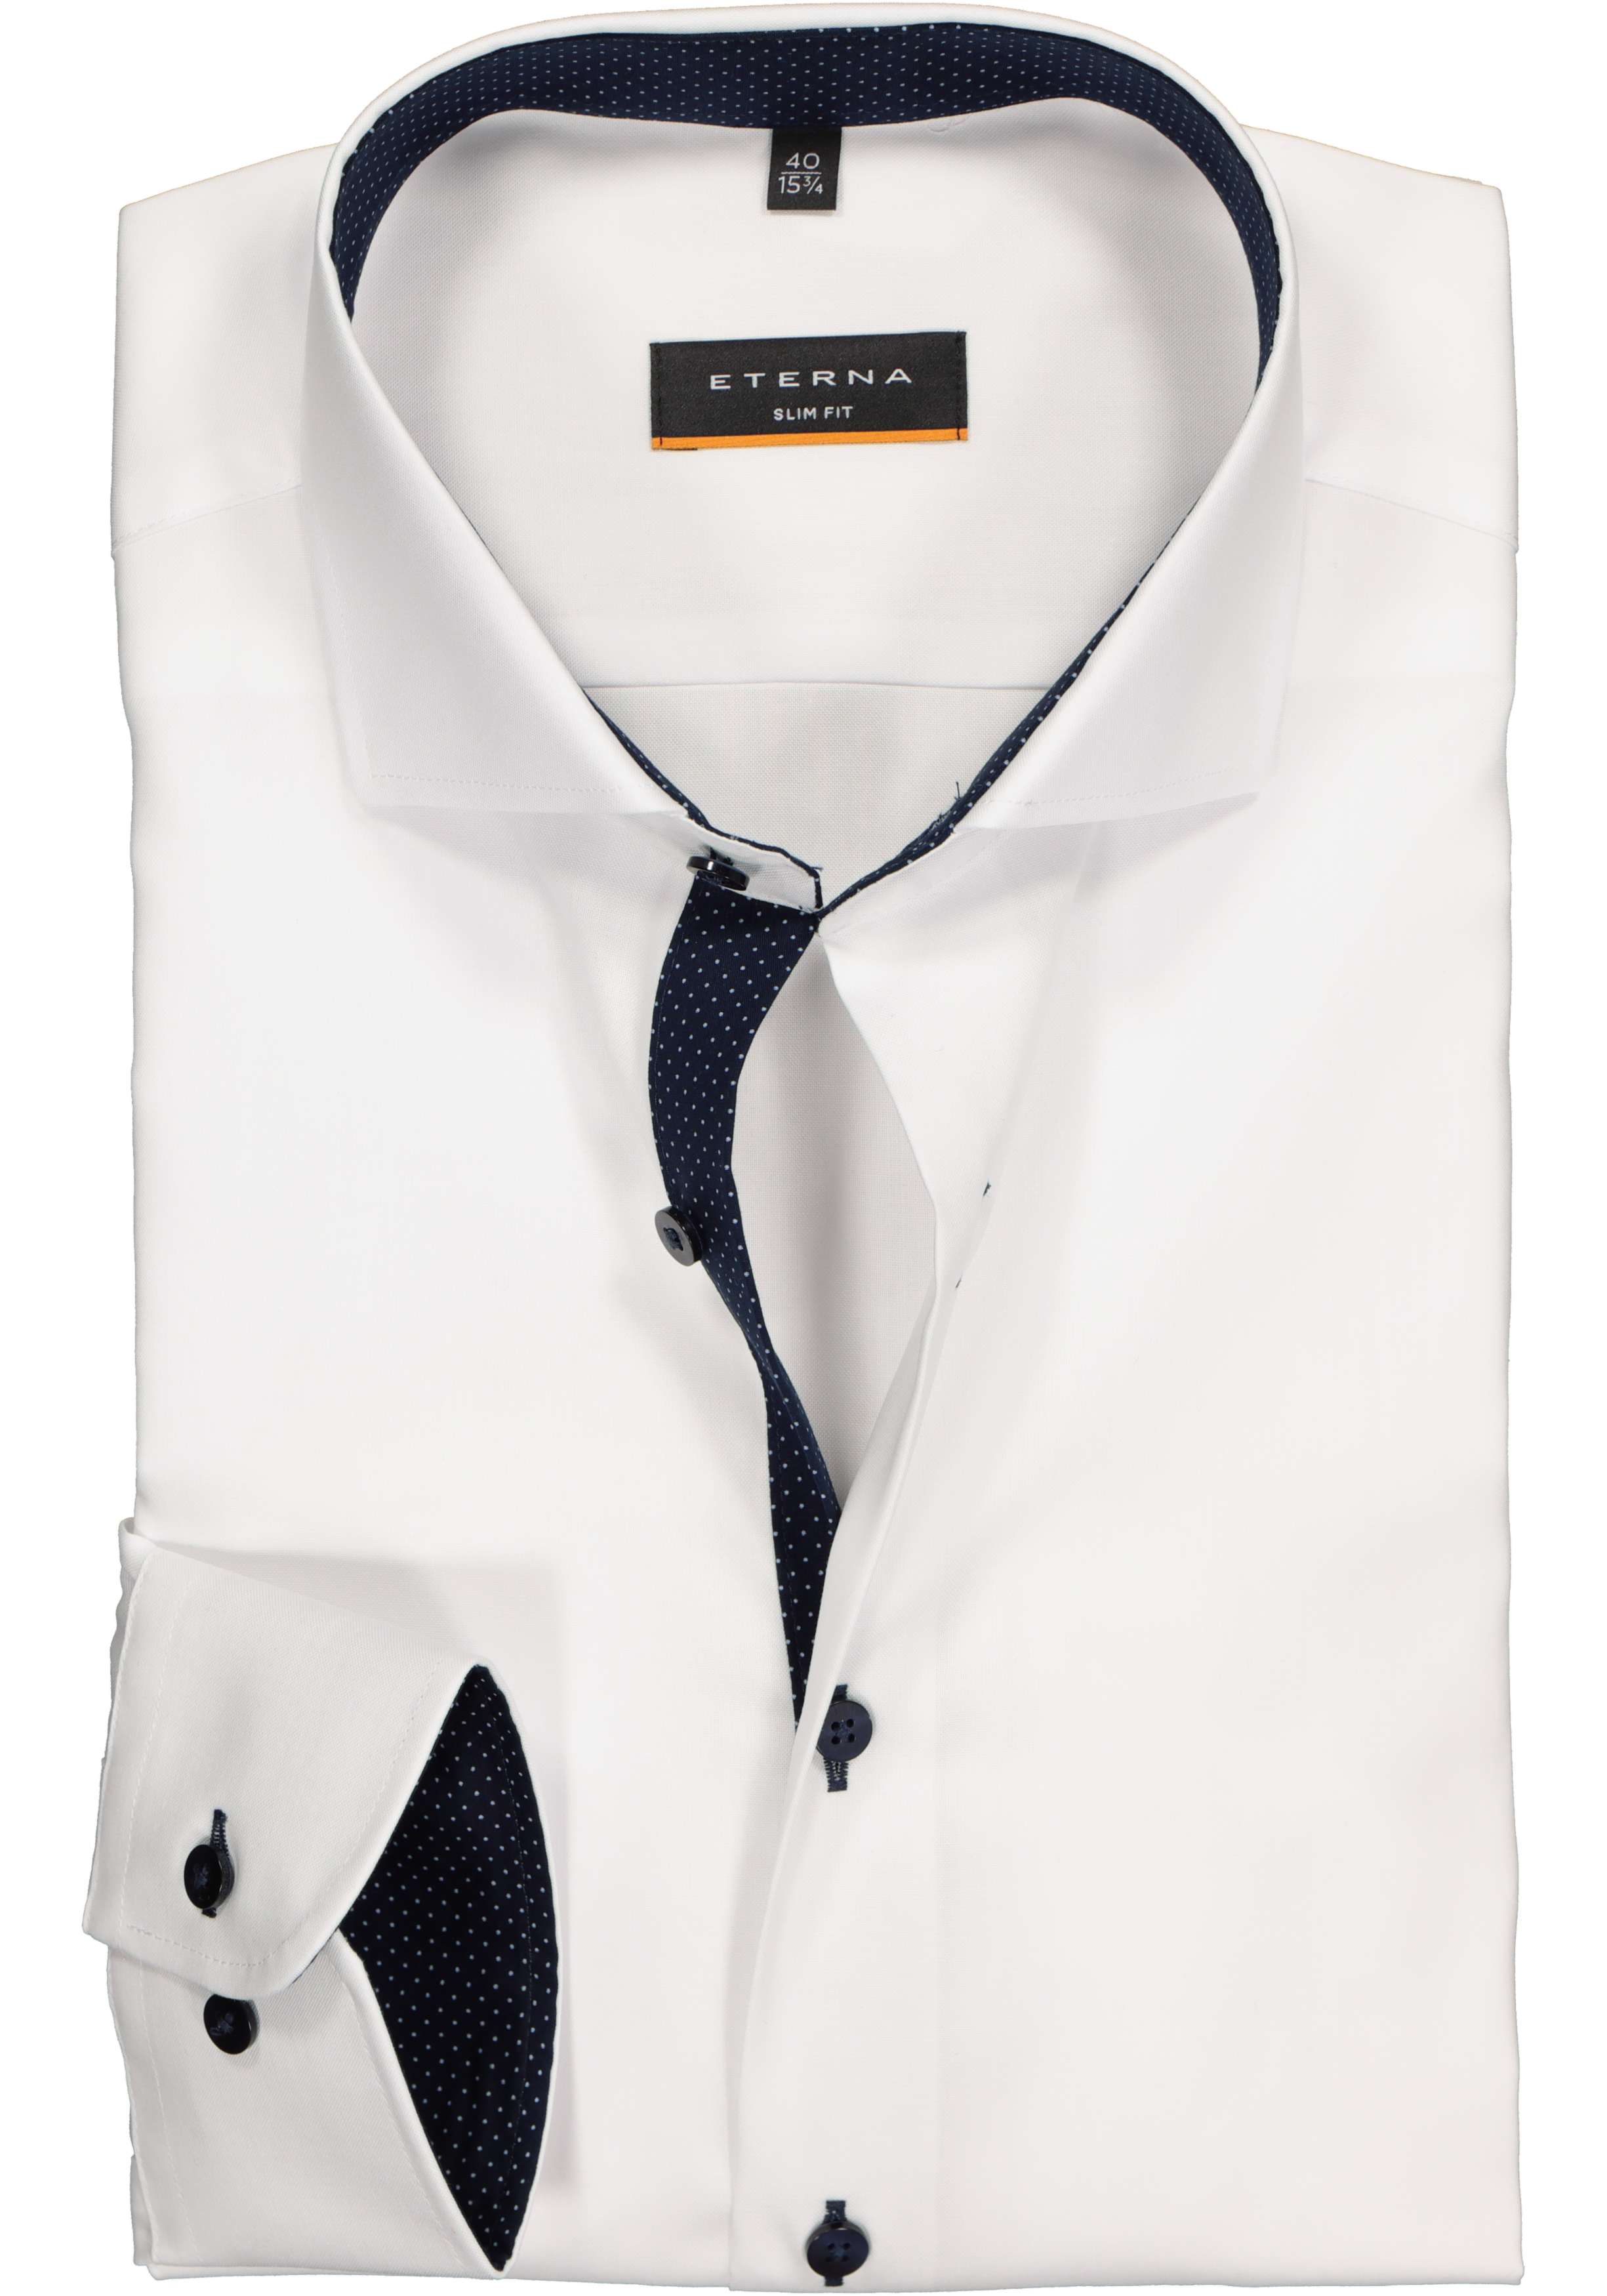 klok nietig op gang brengen Eterna Slim Fit overhemd, wit (fijn Oxford / contrast) - Gratis bezorgd